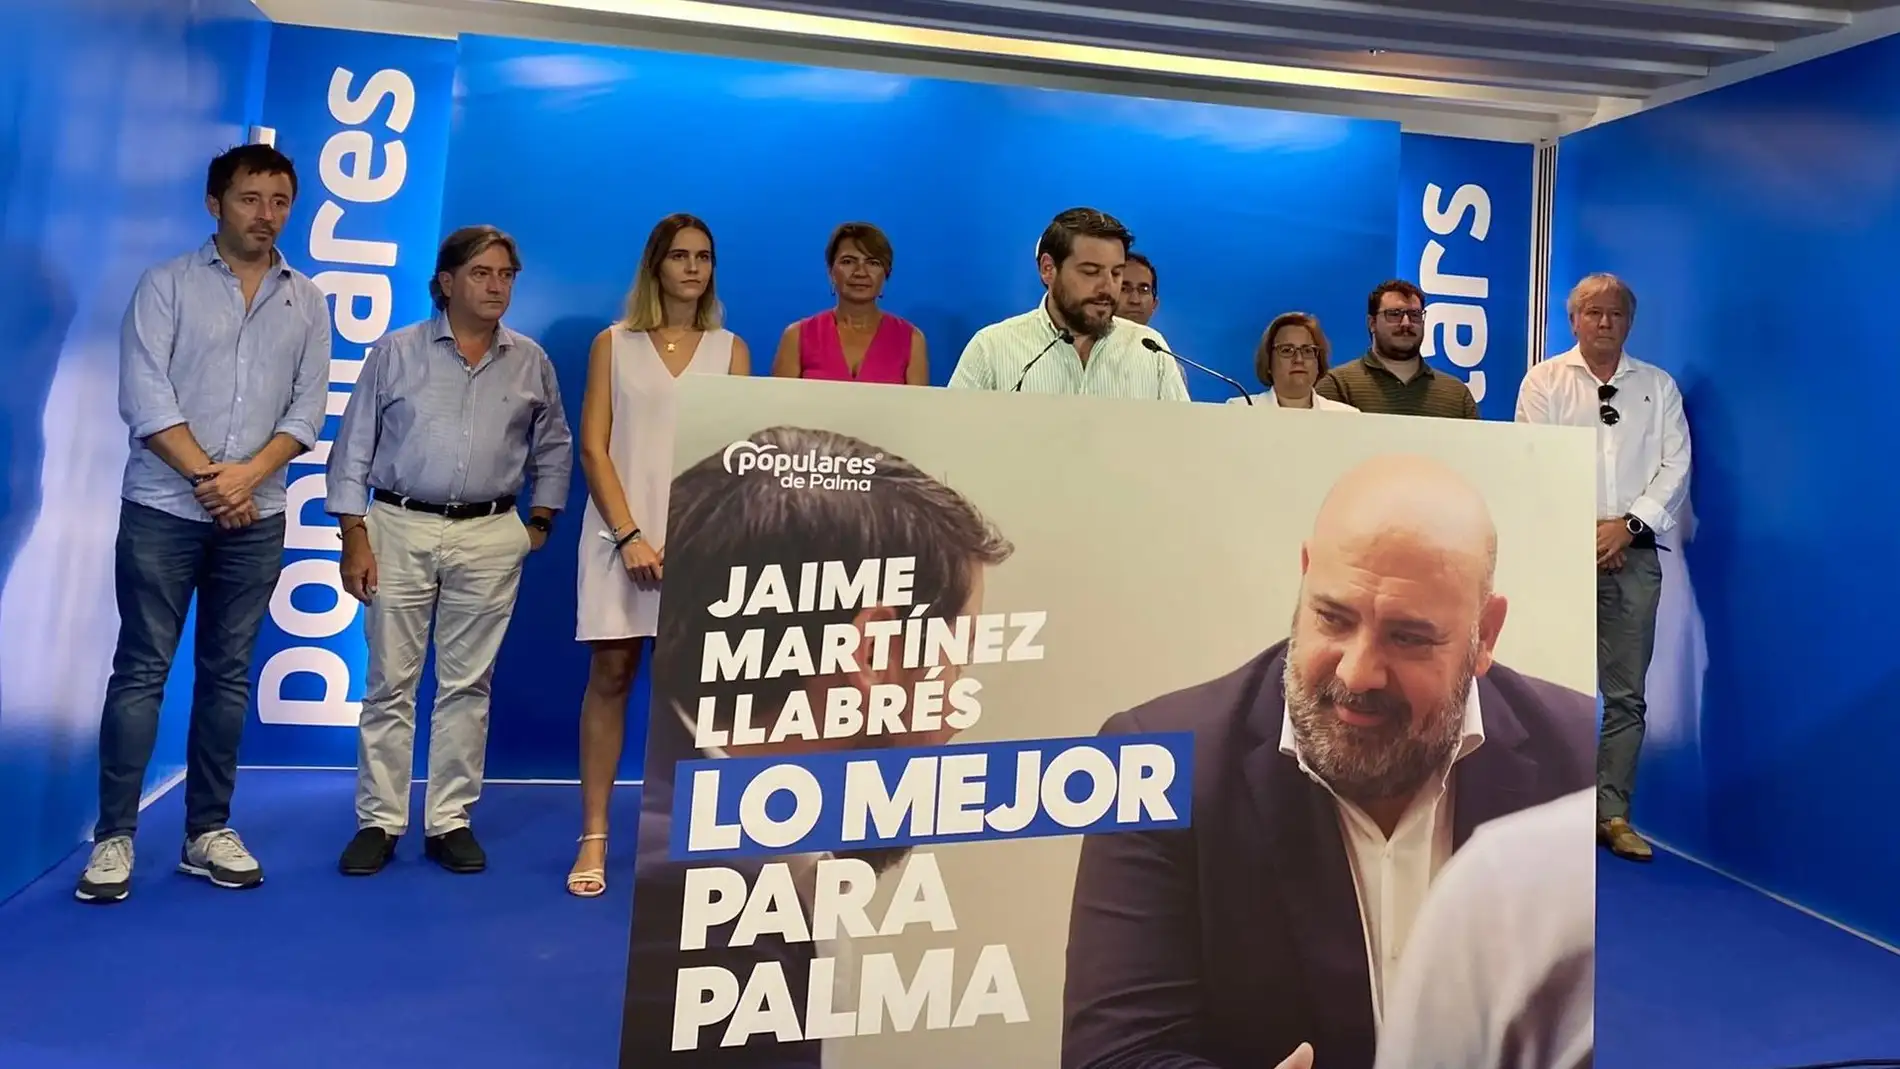 El PP se prepara para las elecciones con el lema 'Lo mejor para Palma' porque "el PSOE ha abandonado" la ciudad